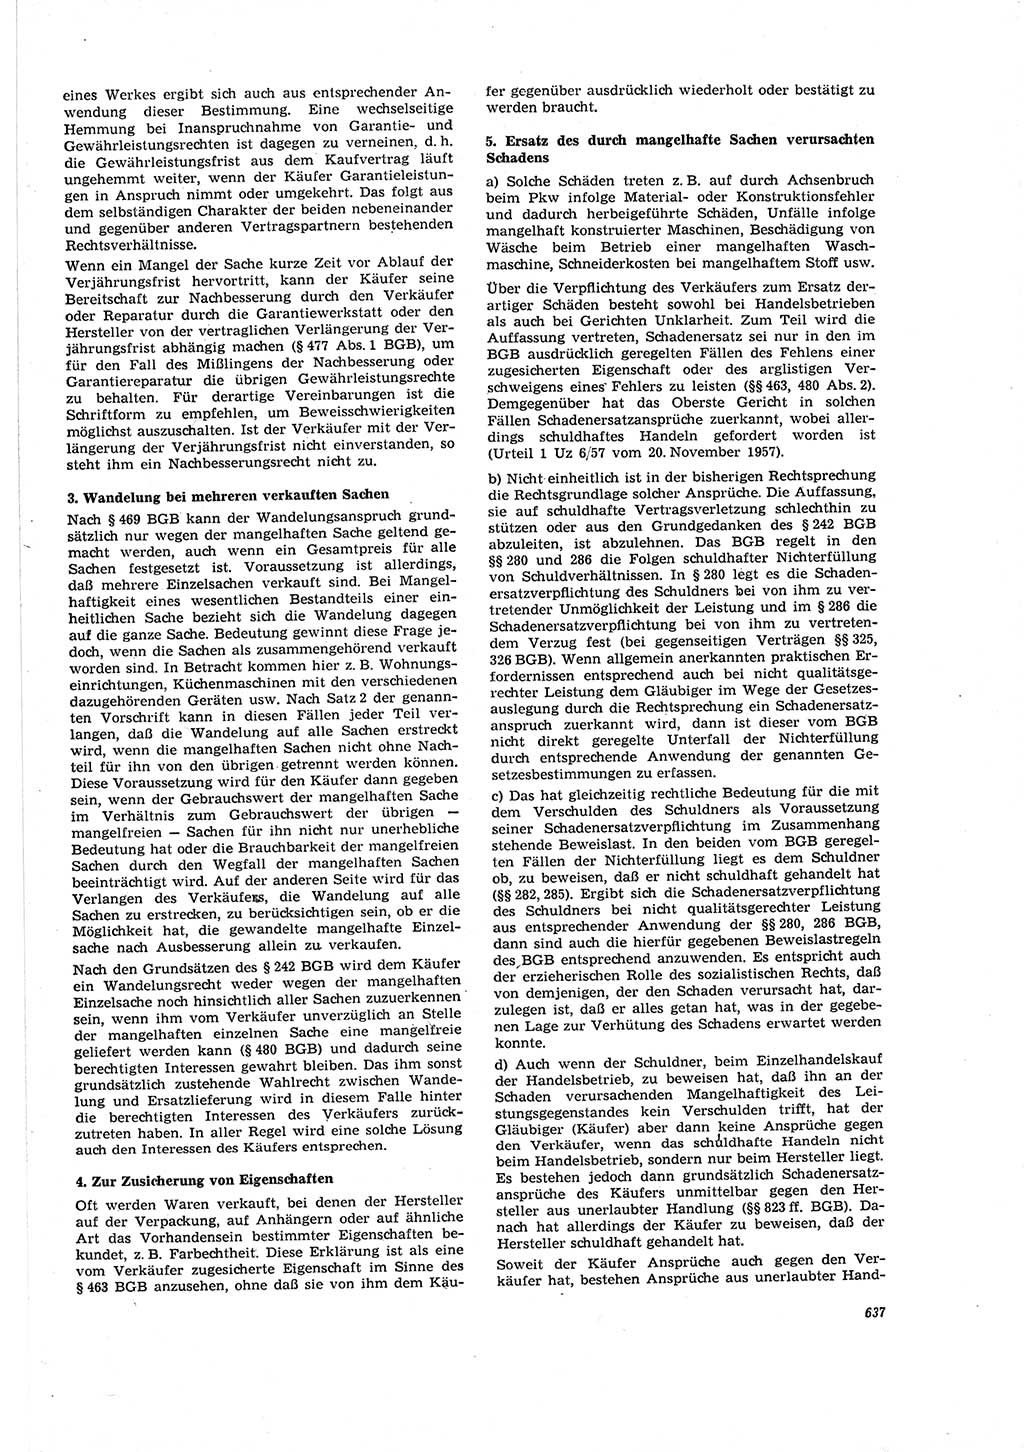 Neue Justiz (NJ), Zeitschrift für Recht und Rechtswissenschaft [Deutsche Demokratische Republik (DDR)], 20. Jahrgang 1966, Seite 637 (NJ DDR 1966, S. 637)